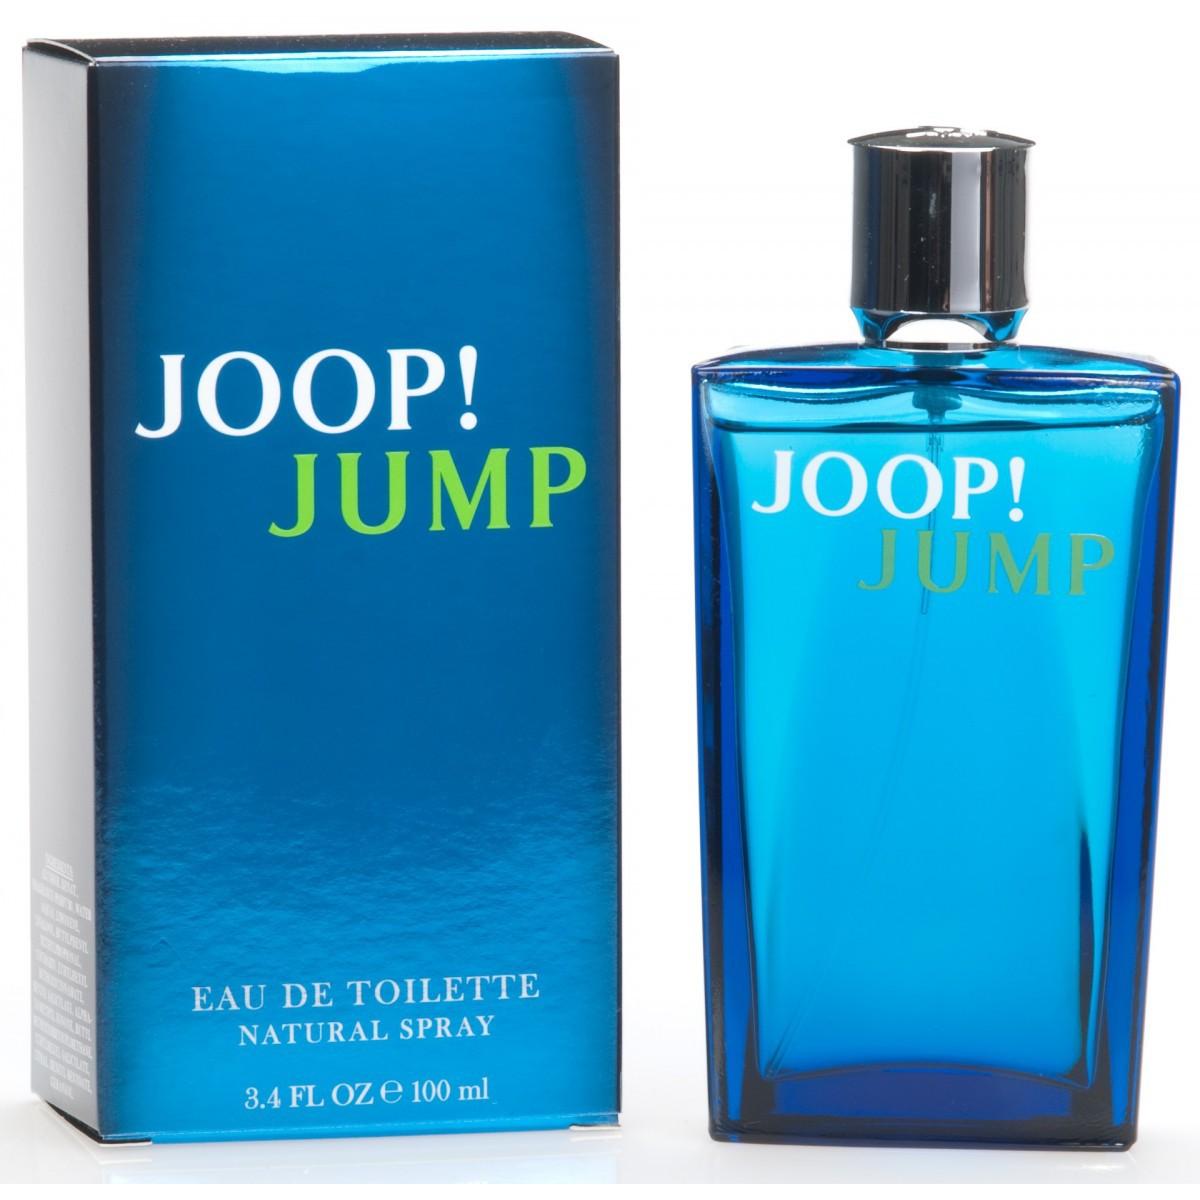 joop-jump-eau-de-toilette-100ml-parfum